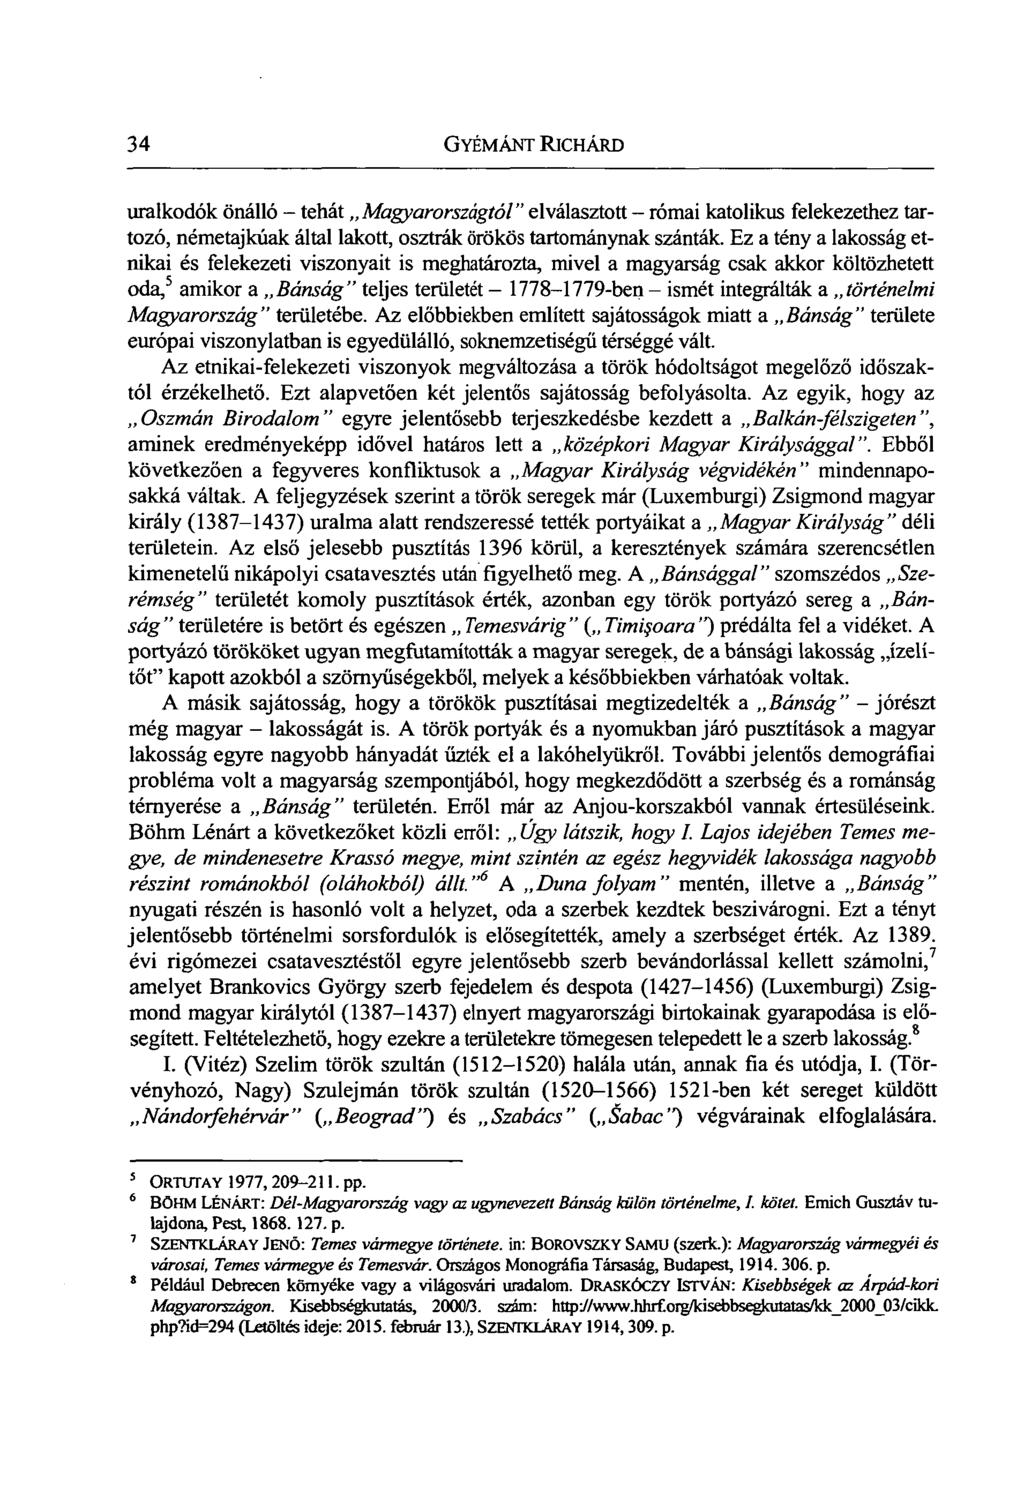 A Bánság újratelepítése, különös tekintettel a 18. századi telepítési  folyamatokra - PDF Ingyenes letöltés